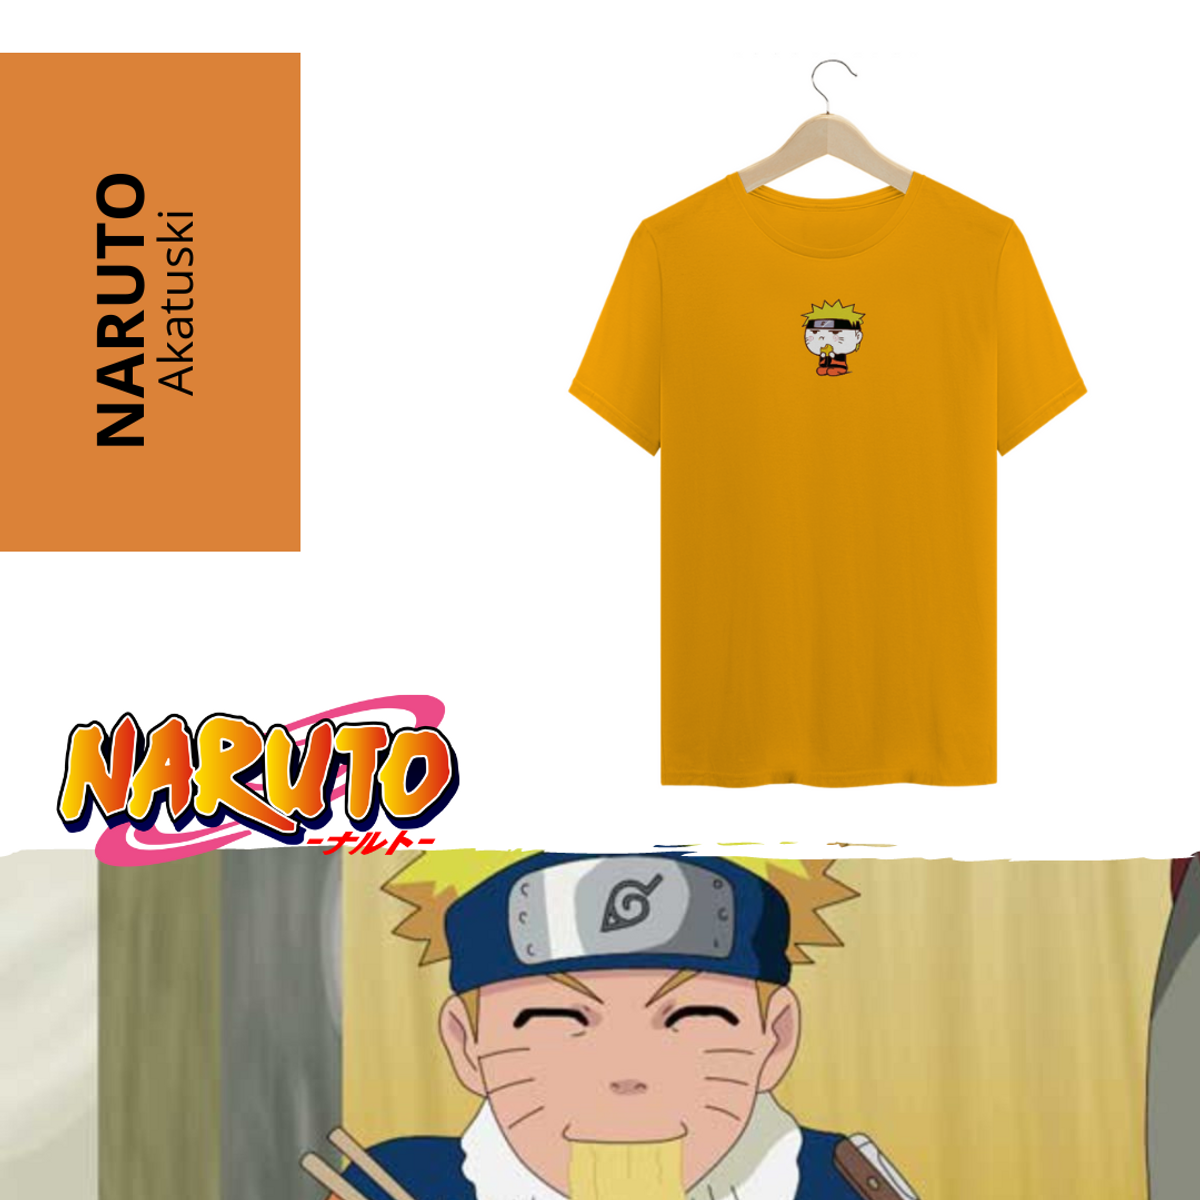 Nome do produto: Naruto Poker Face